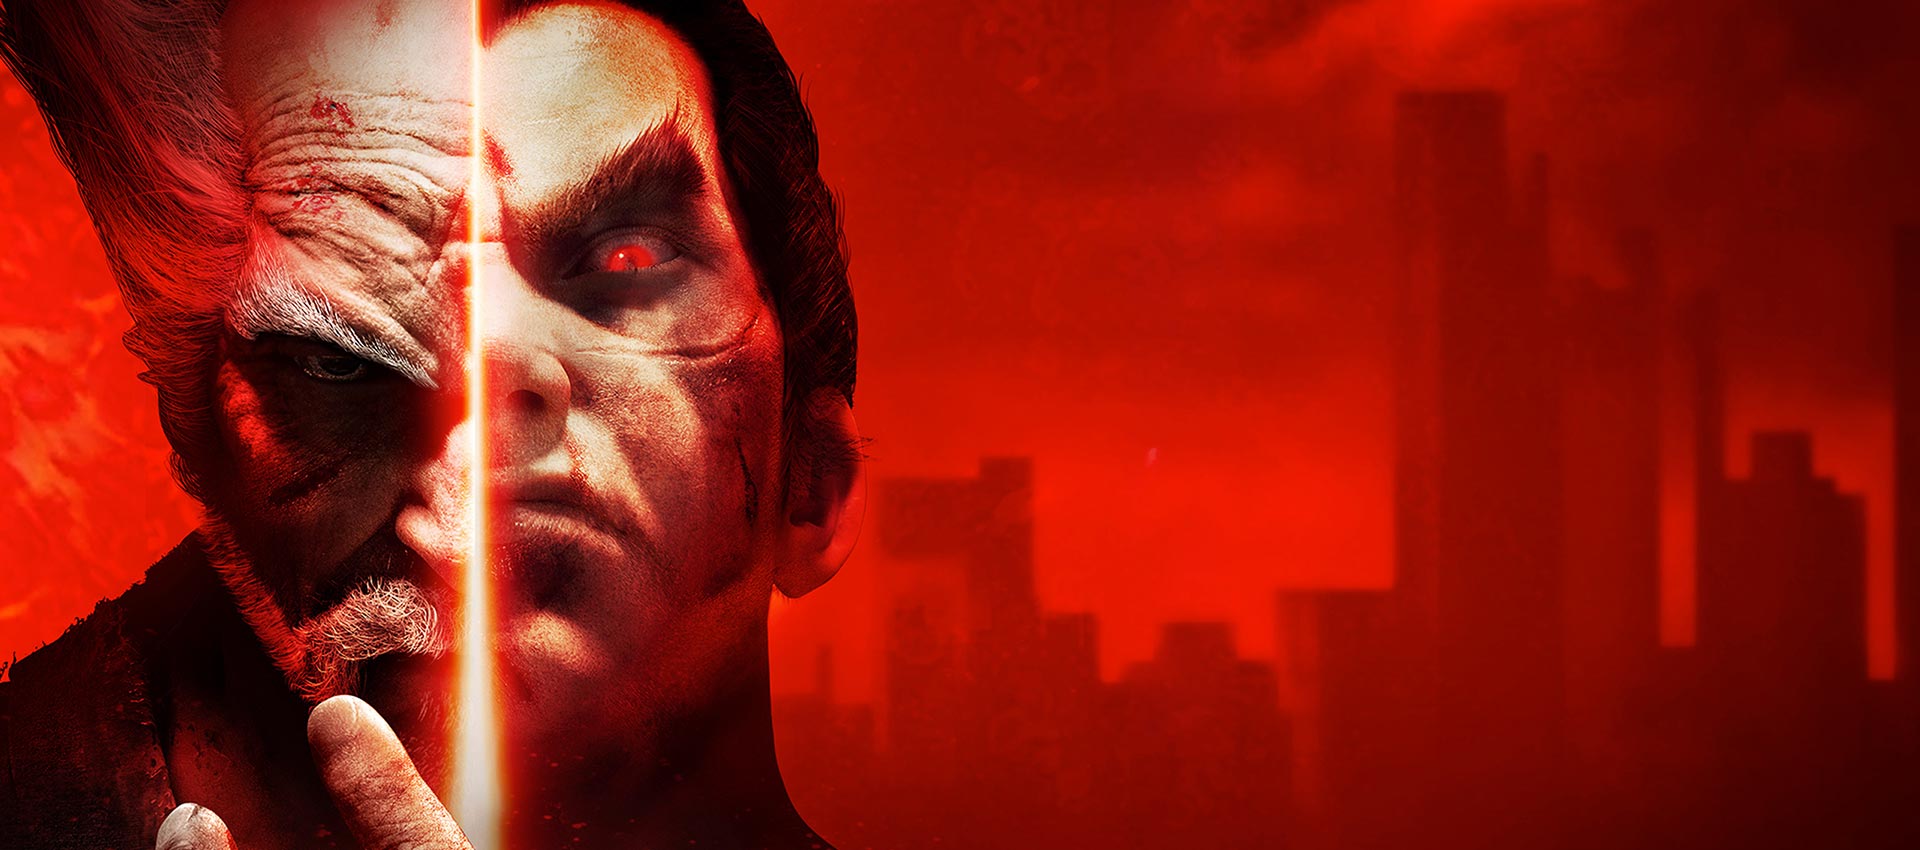 تاریخچه سری Tekken – نبردهای پدران و پسران